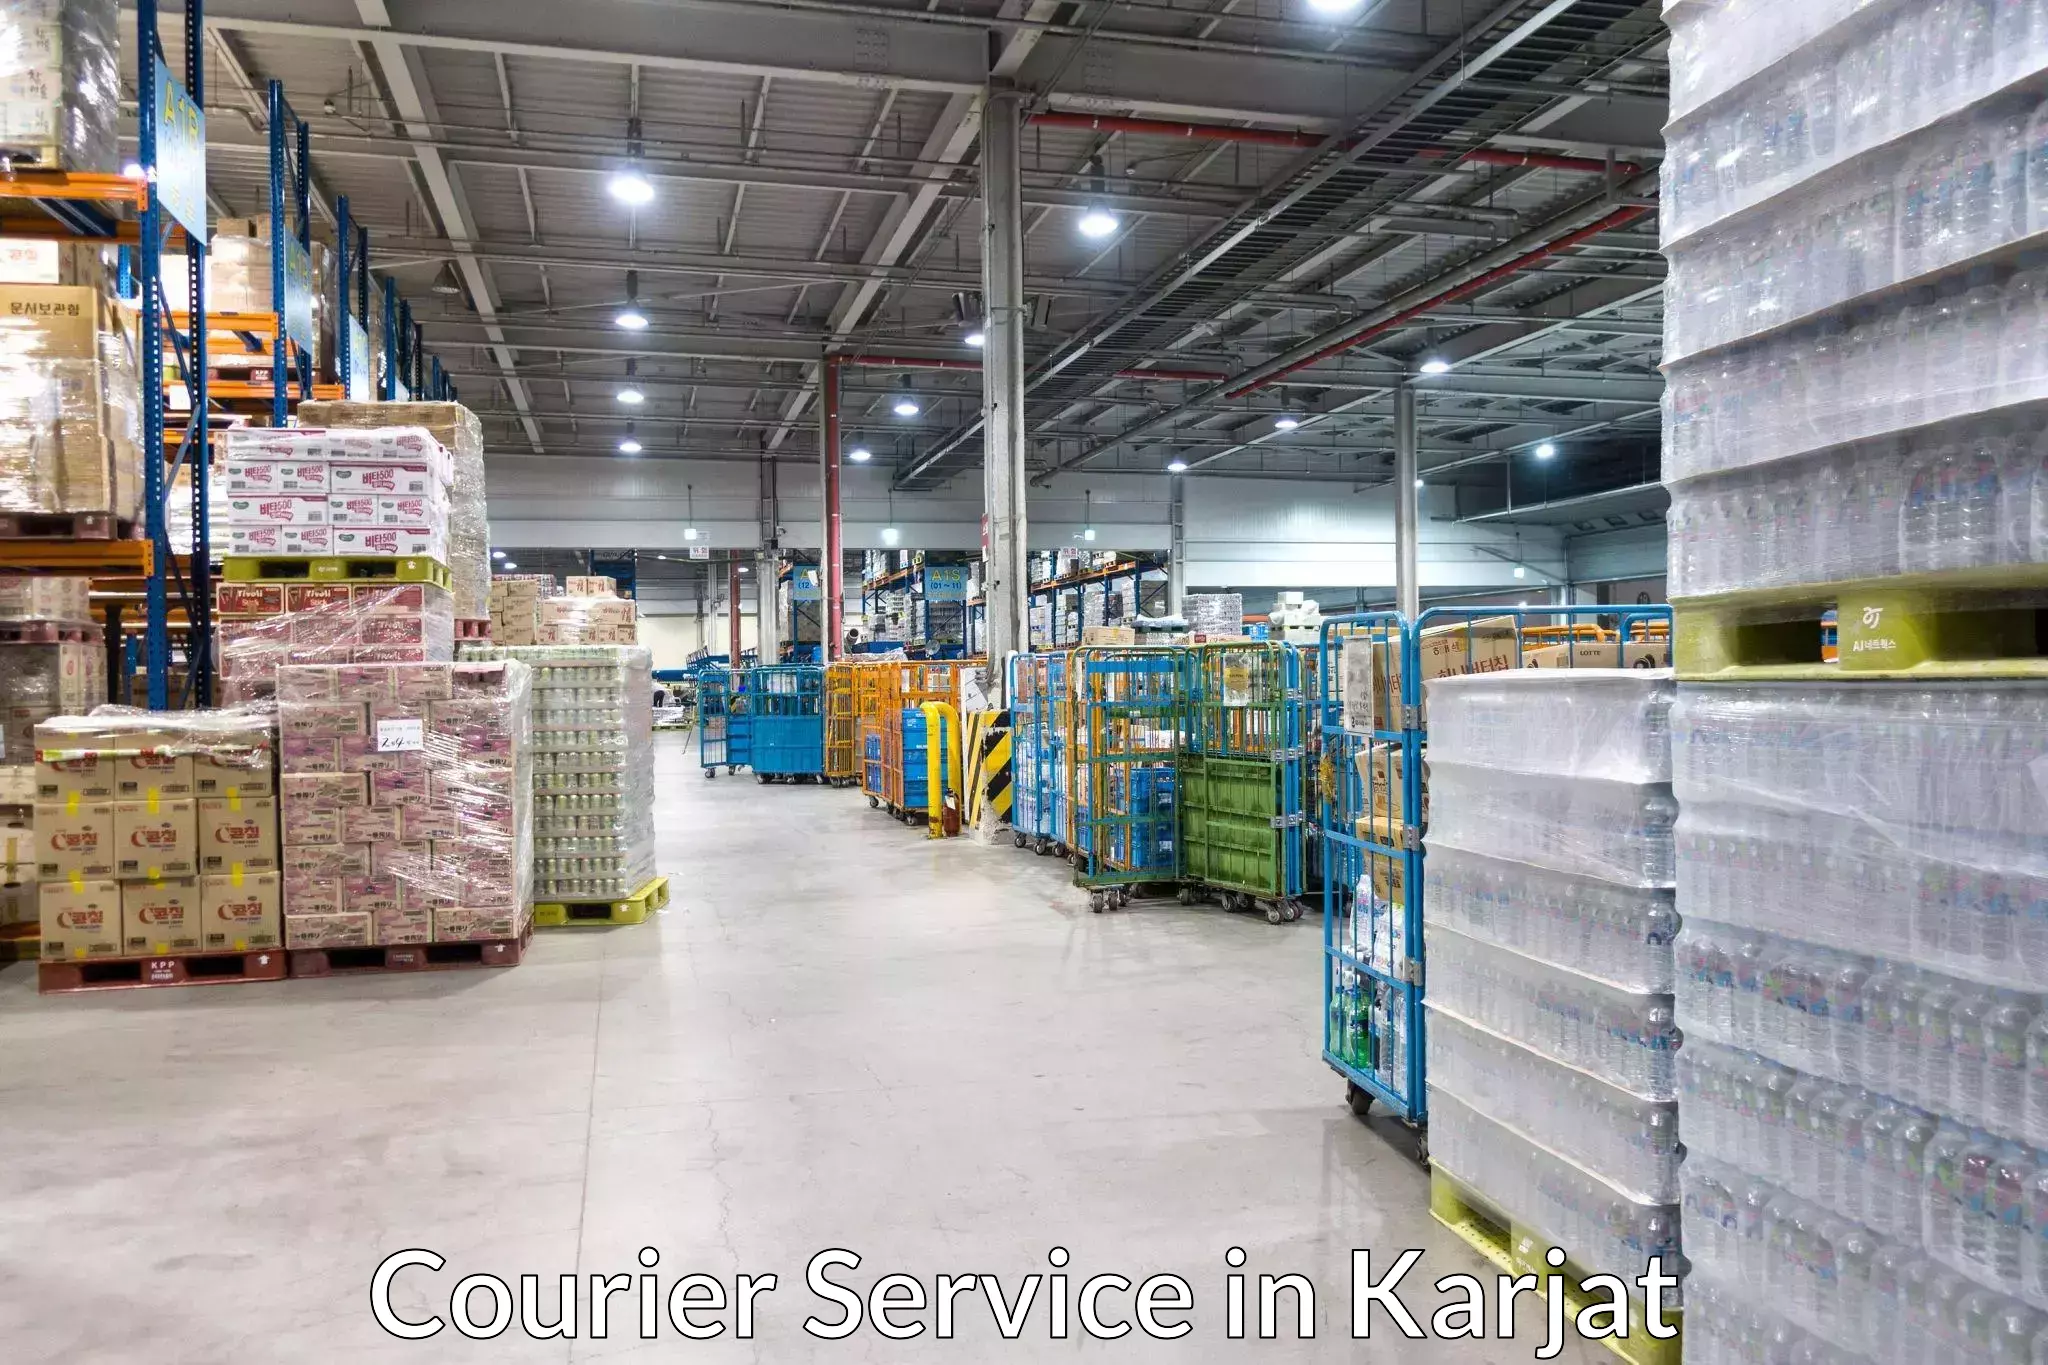 Parcel service for businesses in Karjat